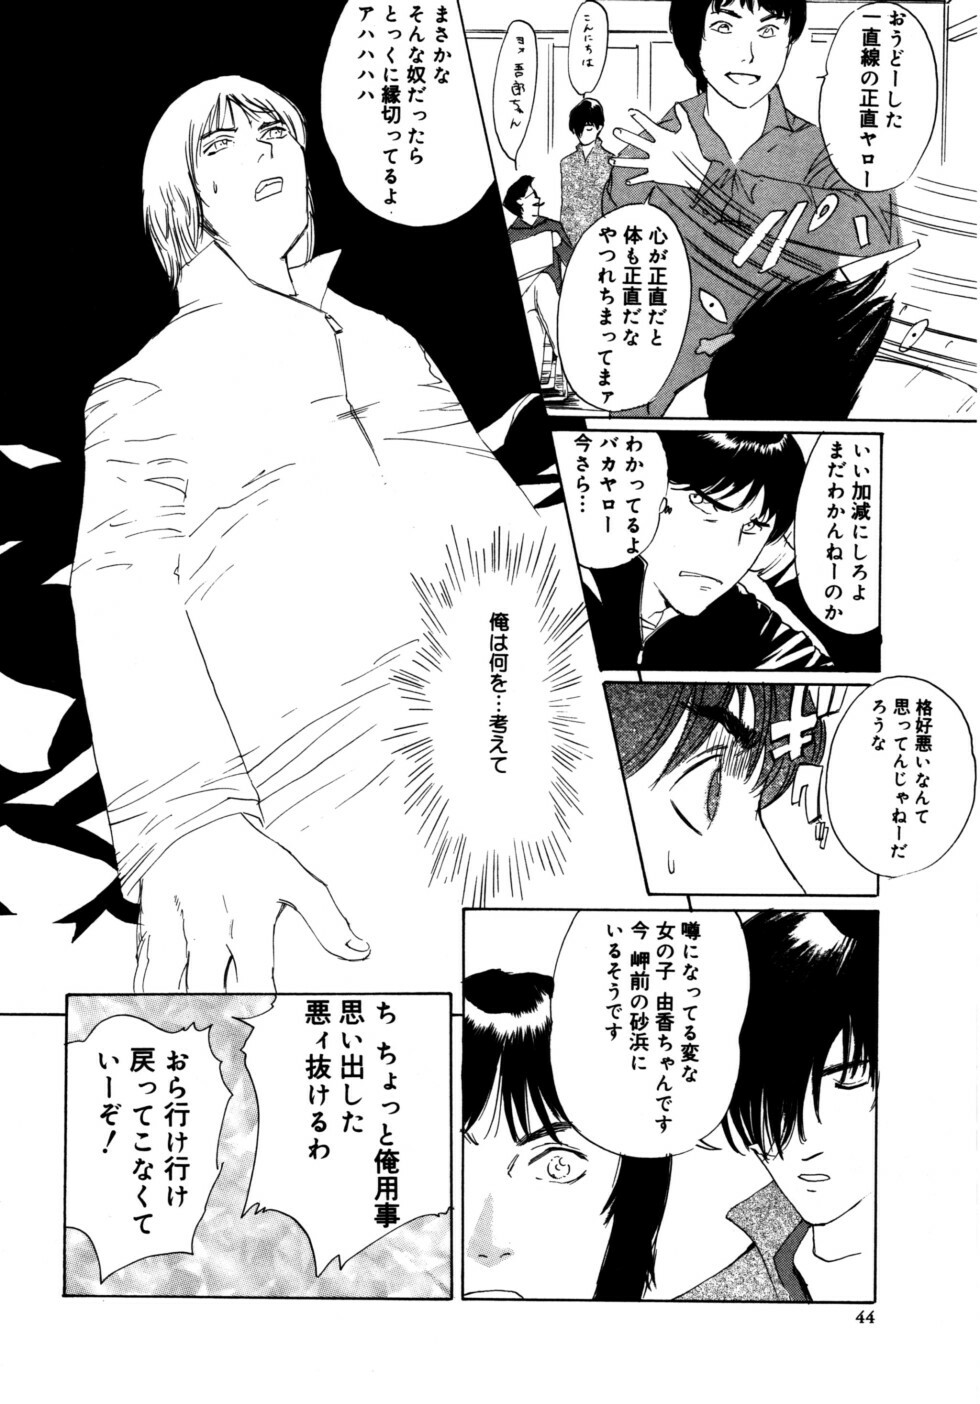 [Shirogane Anjyu] Nukumori No Kioku page 44 full